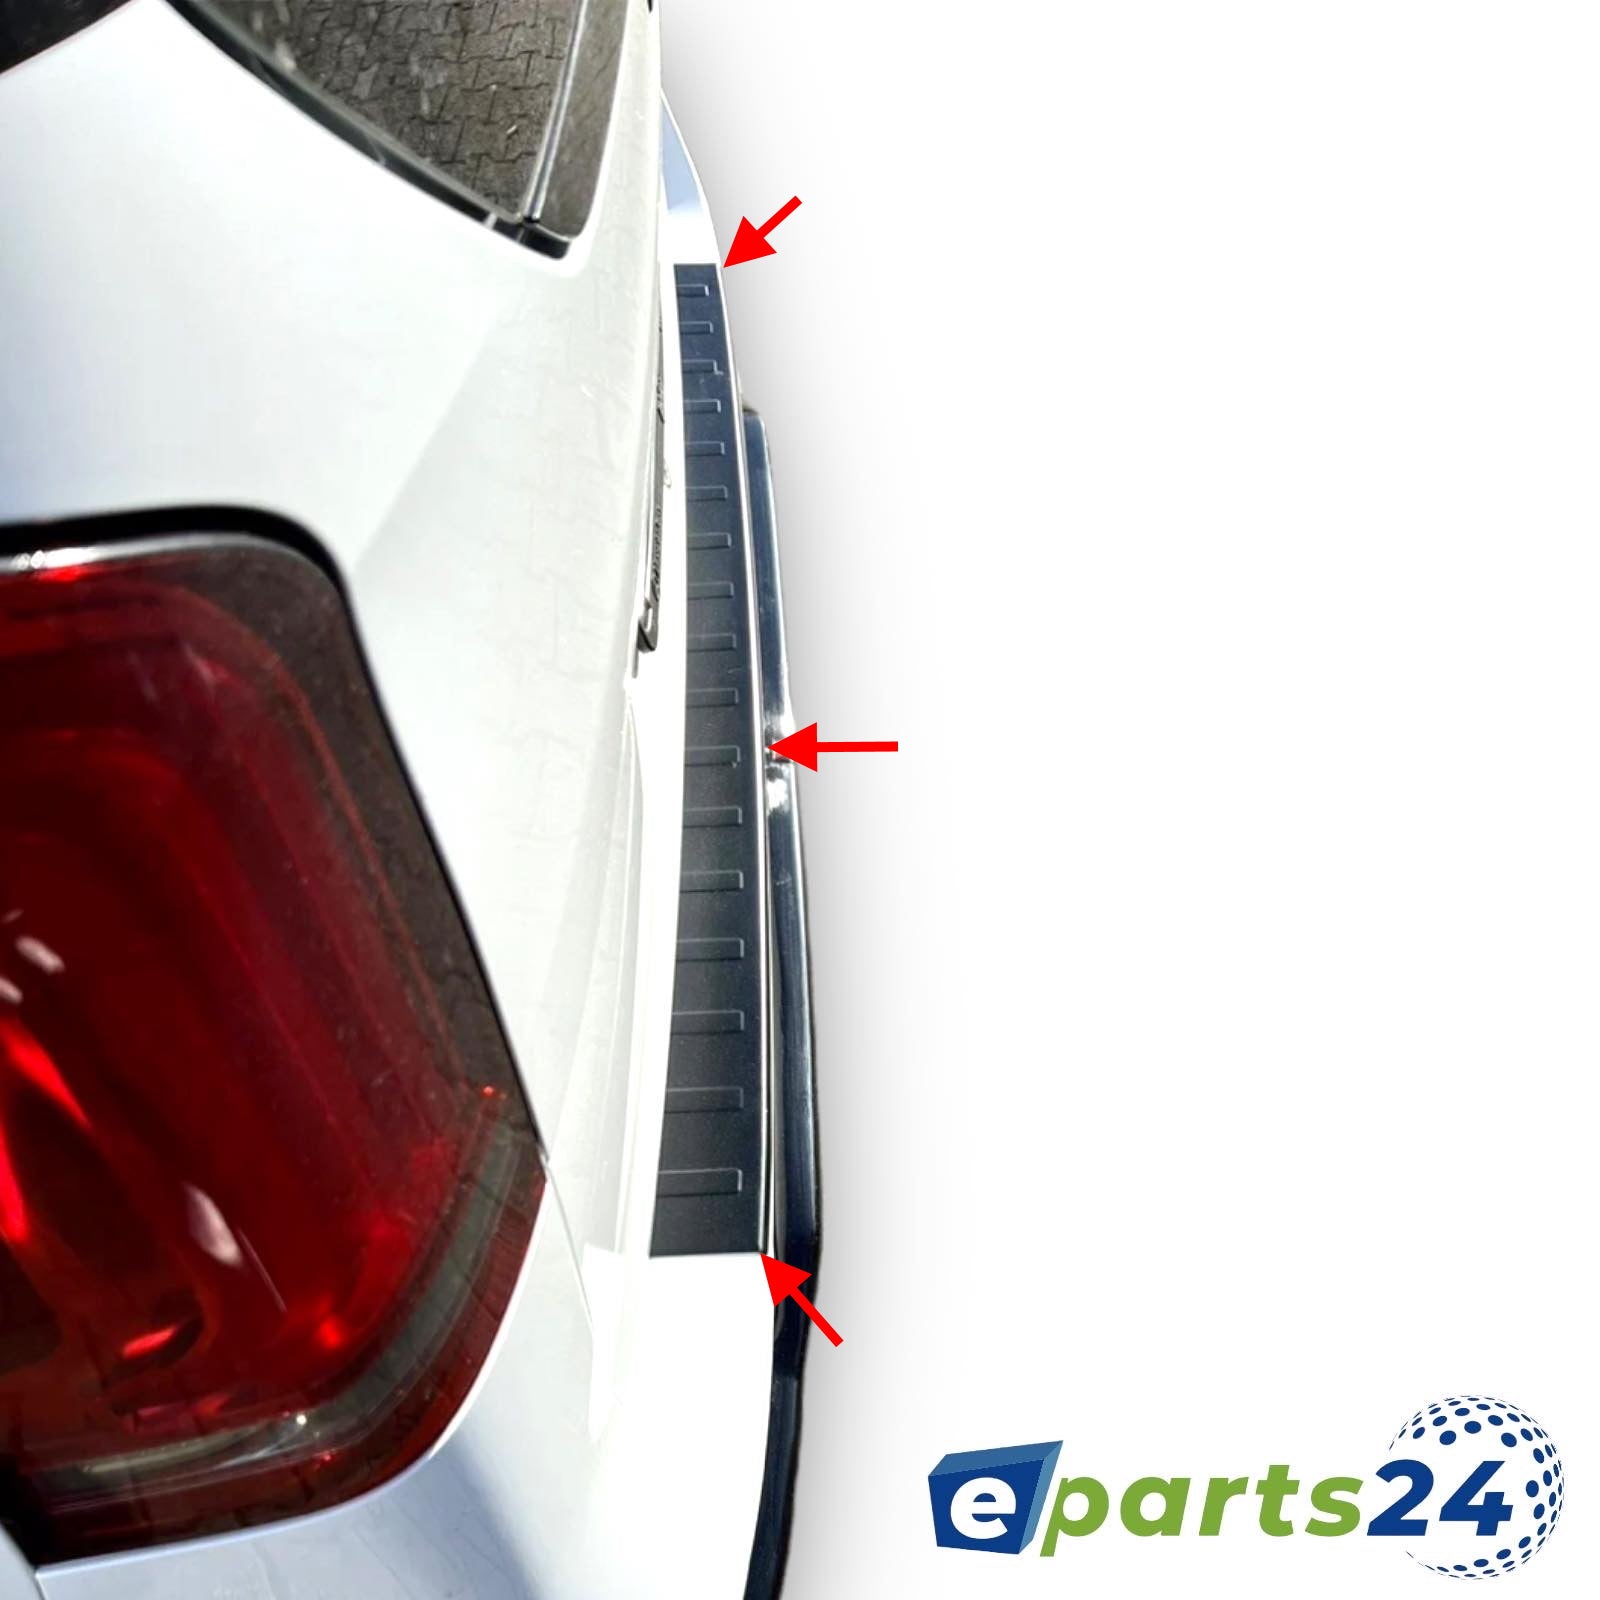 Ladekantenschutz für Mercedes V Klasse mat 2014-2022 schwarz Vito E-Parts24 – W447